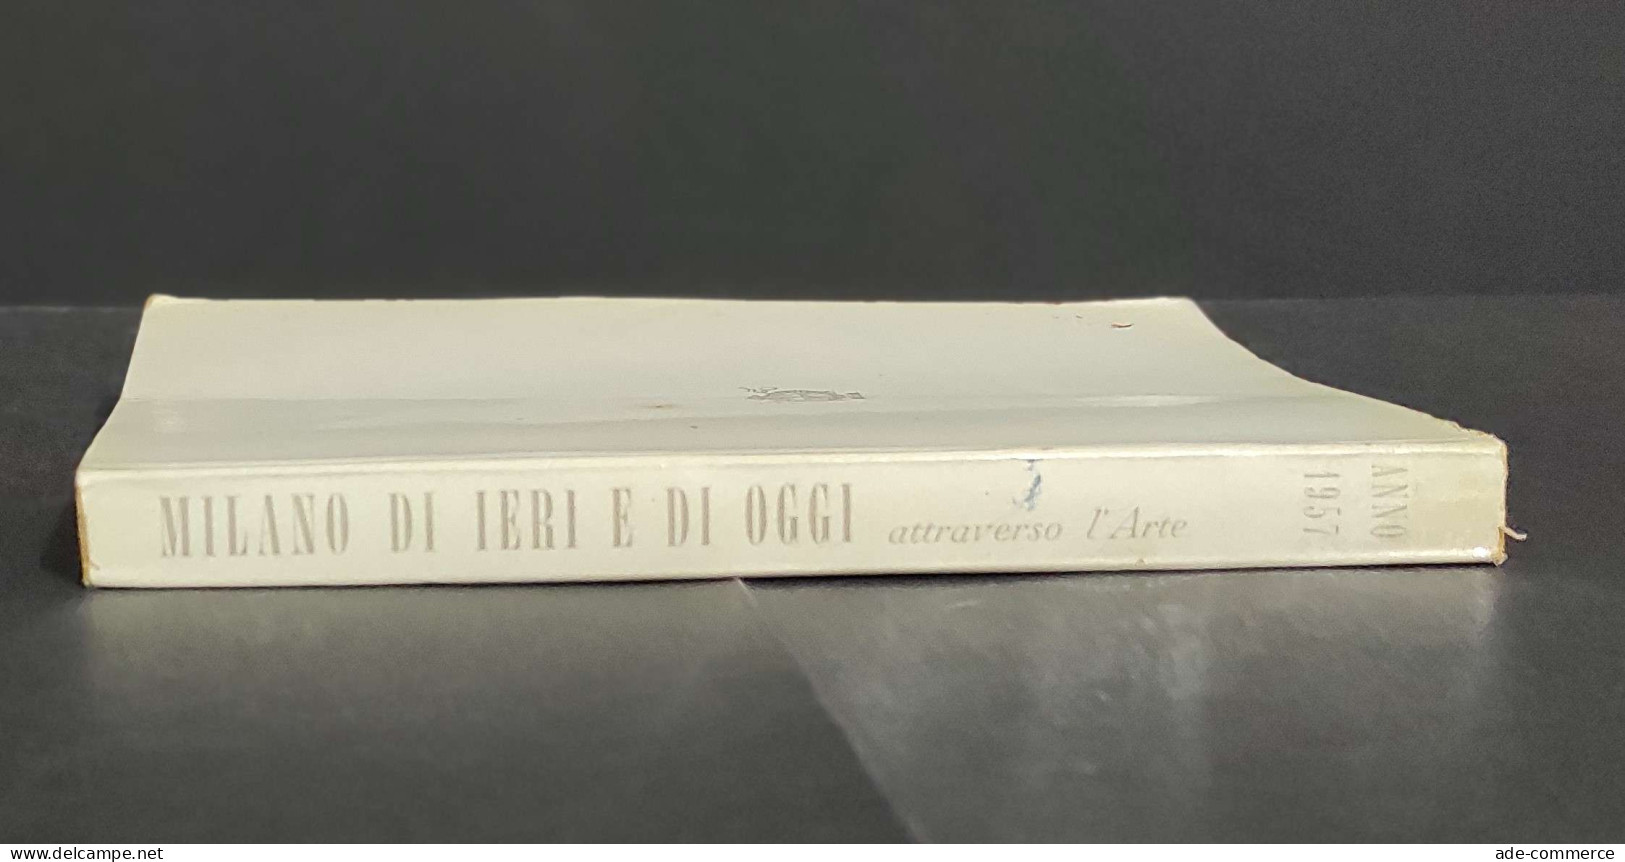 Milano Di Ieri E Di Oggi Attraverso L'Arte - Ed. Permanente - 1957                                                       - Arts, Antiquity